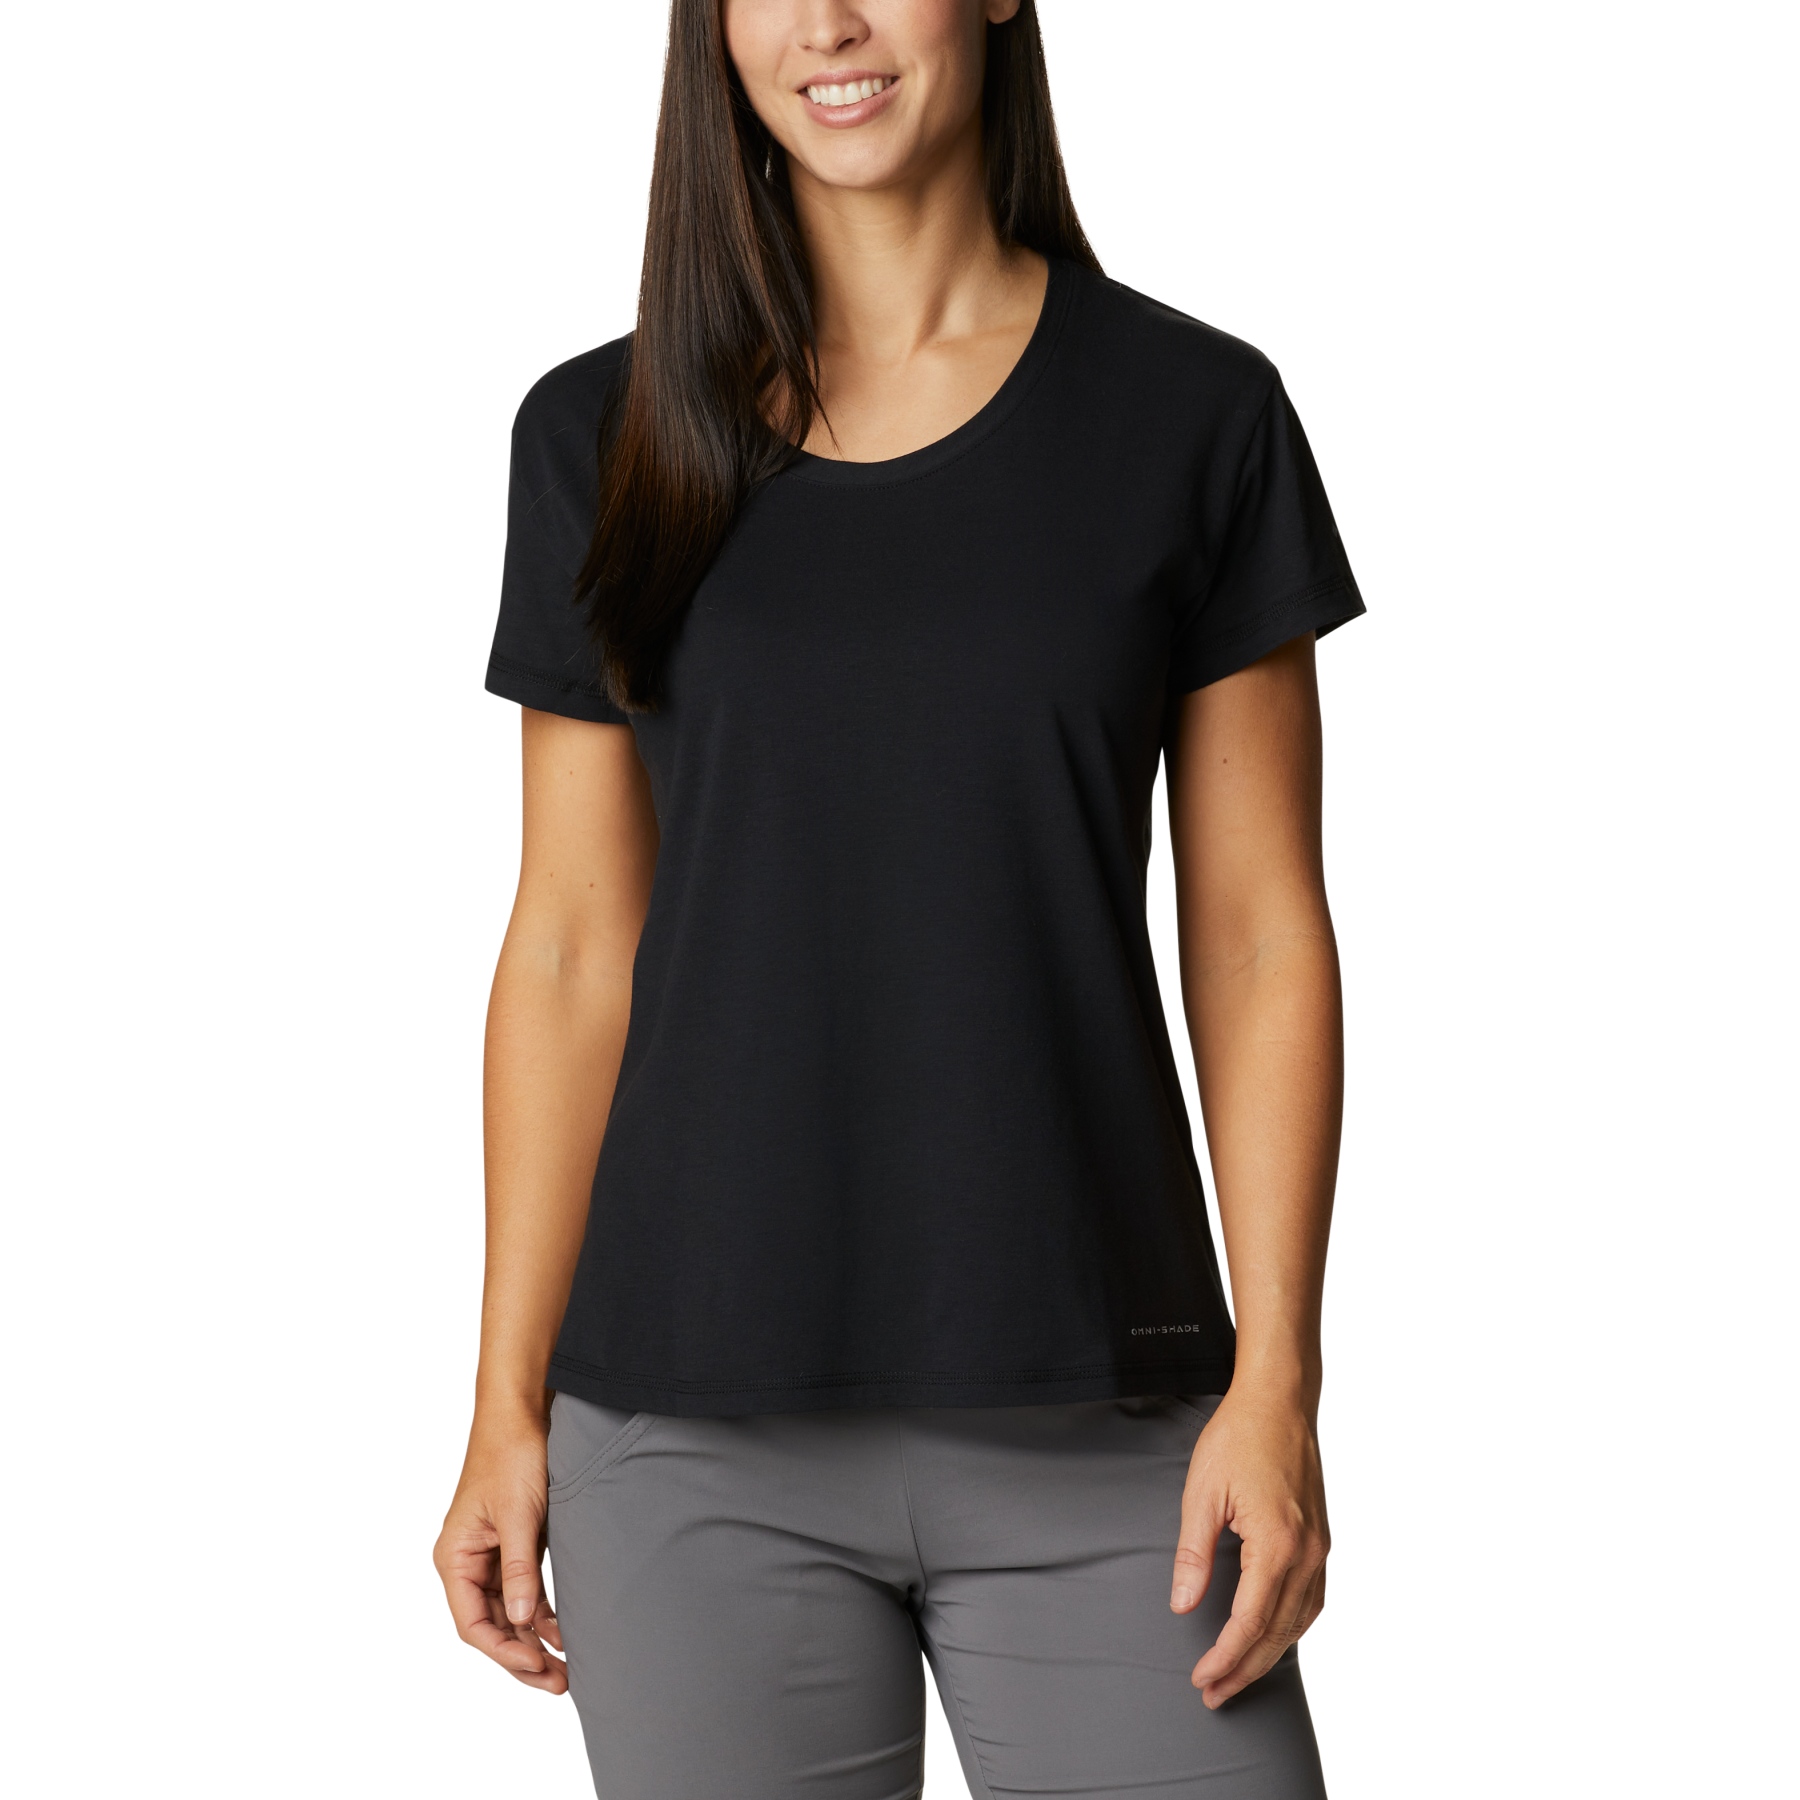 Produktbild von Columbia Sun Trek T-Shirt Damen - Schwarz